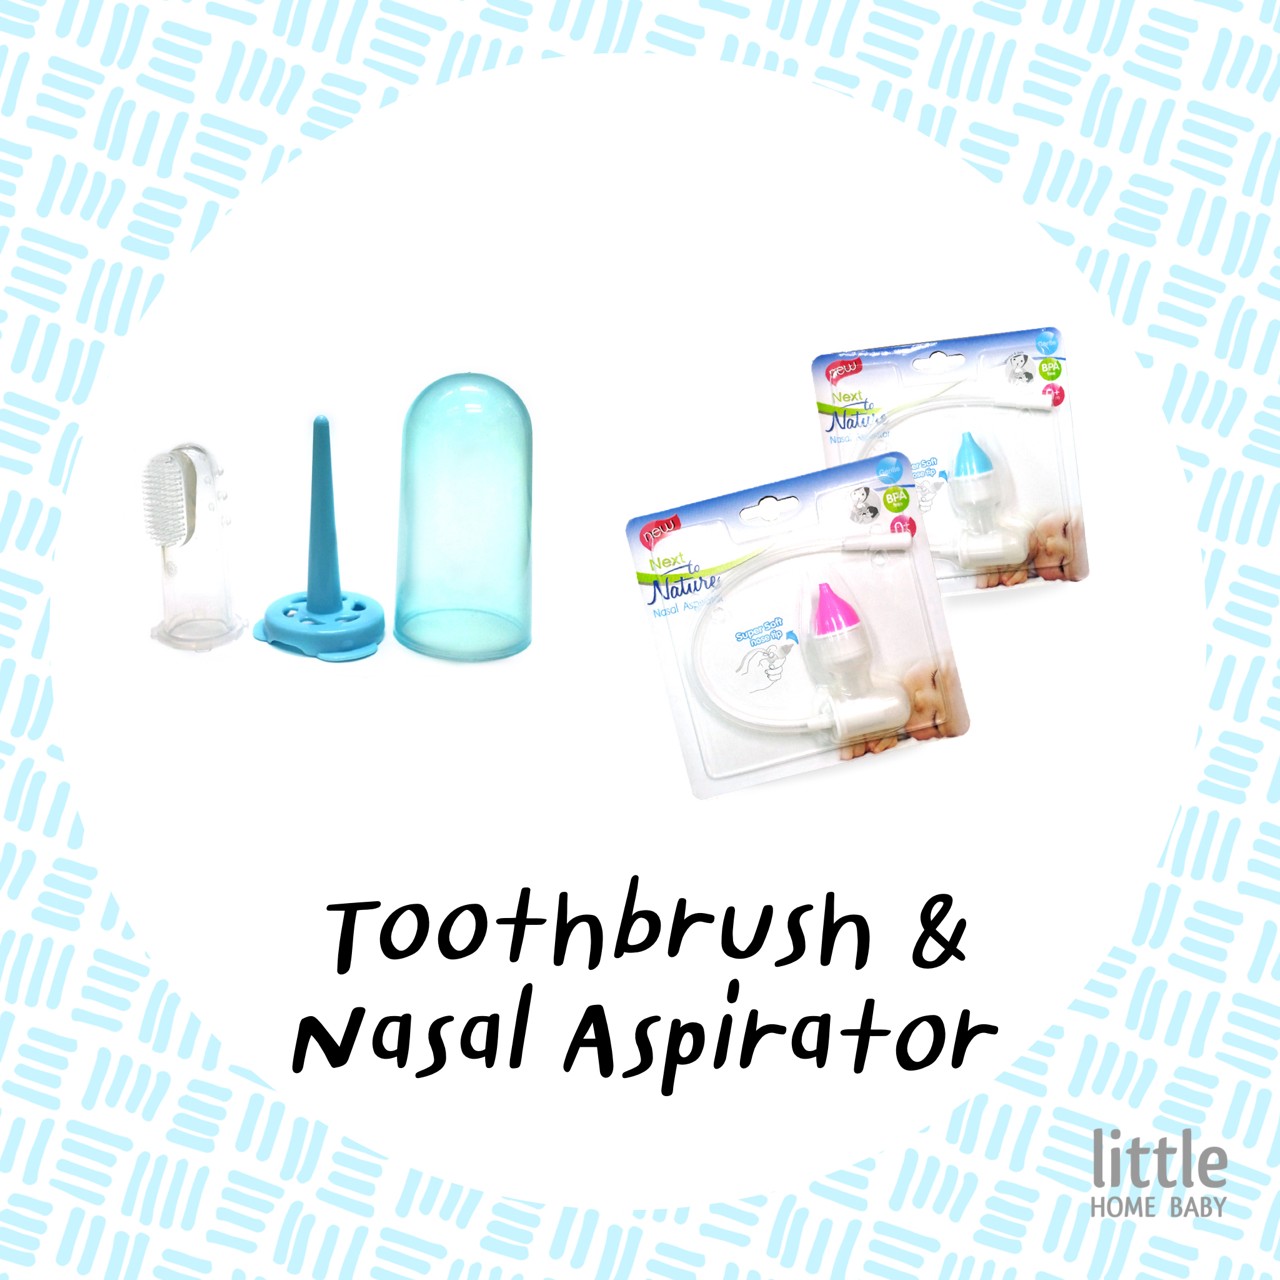 Nasal Aspirator & Toothbrush